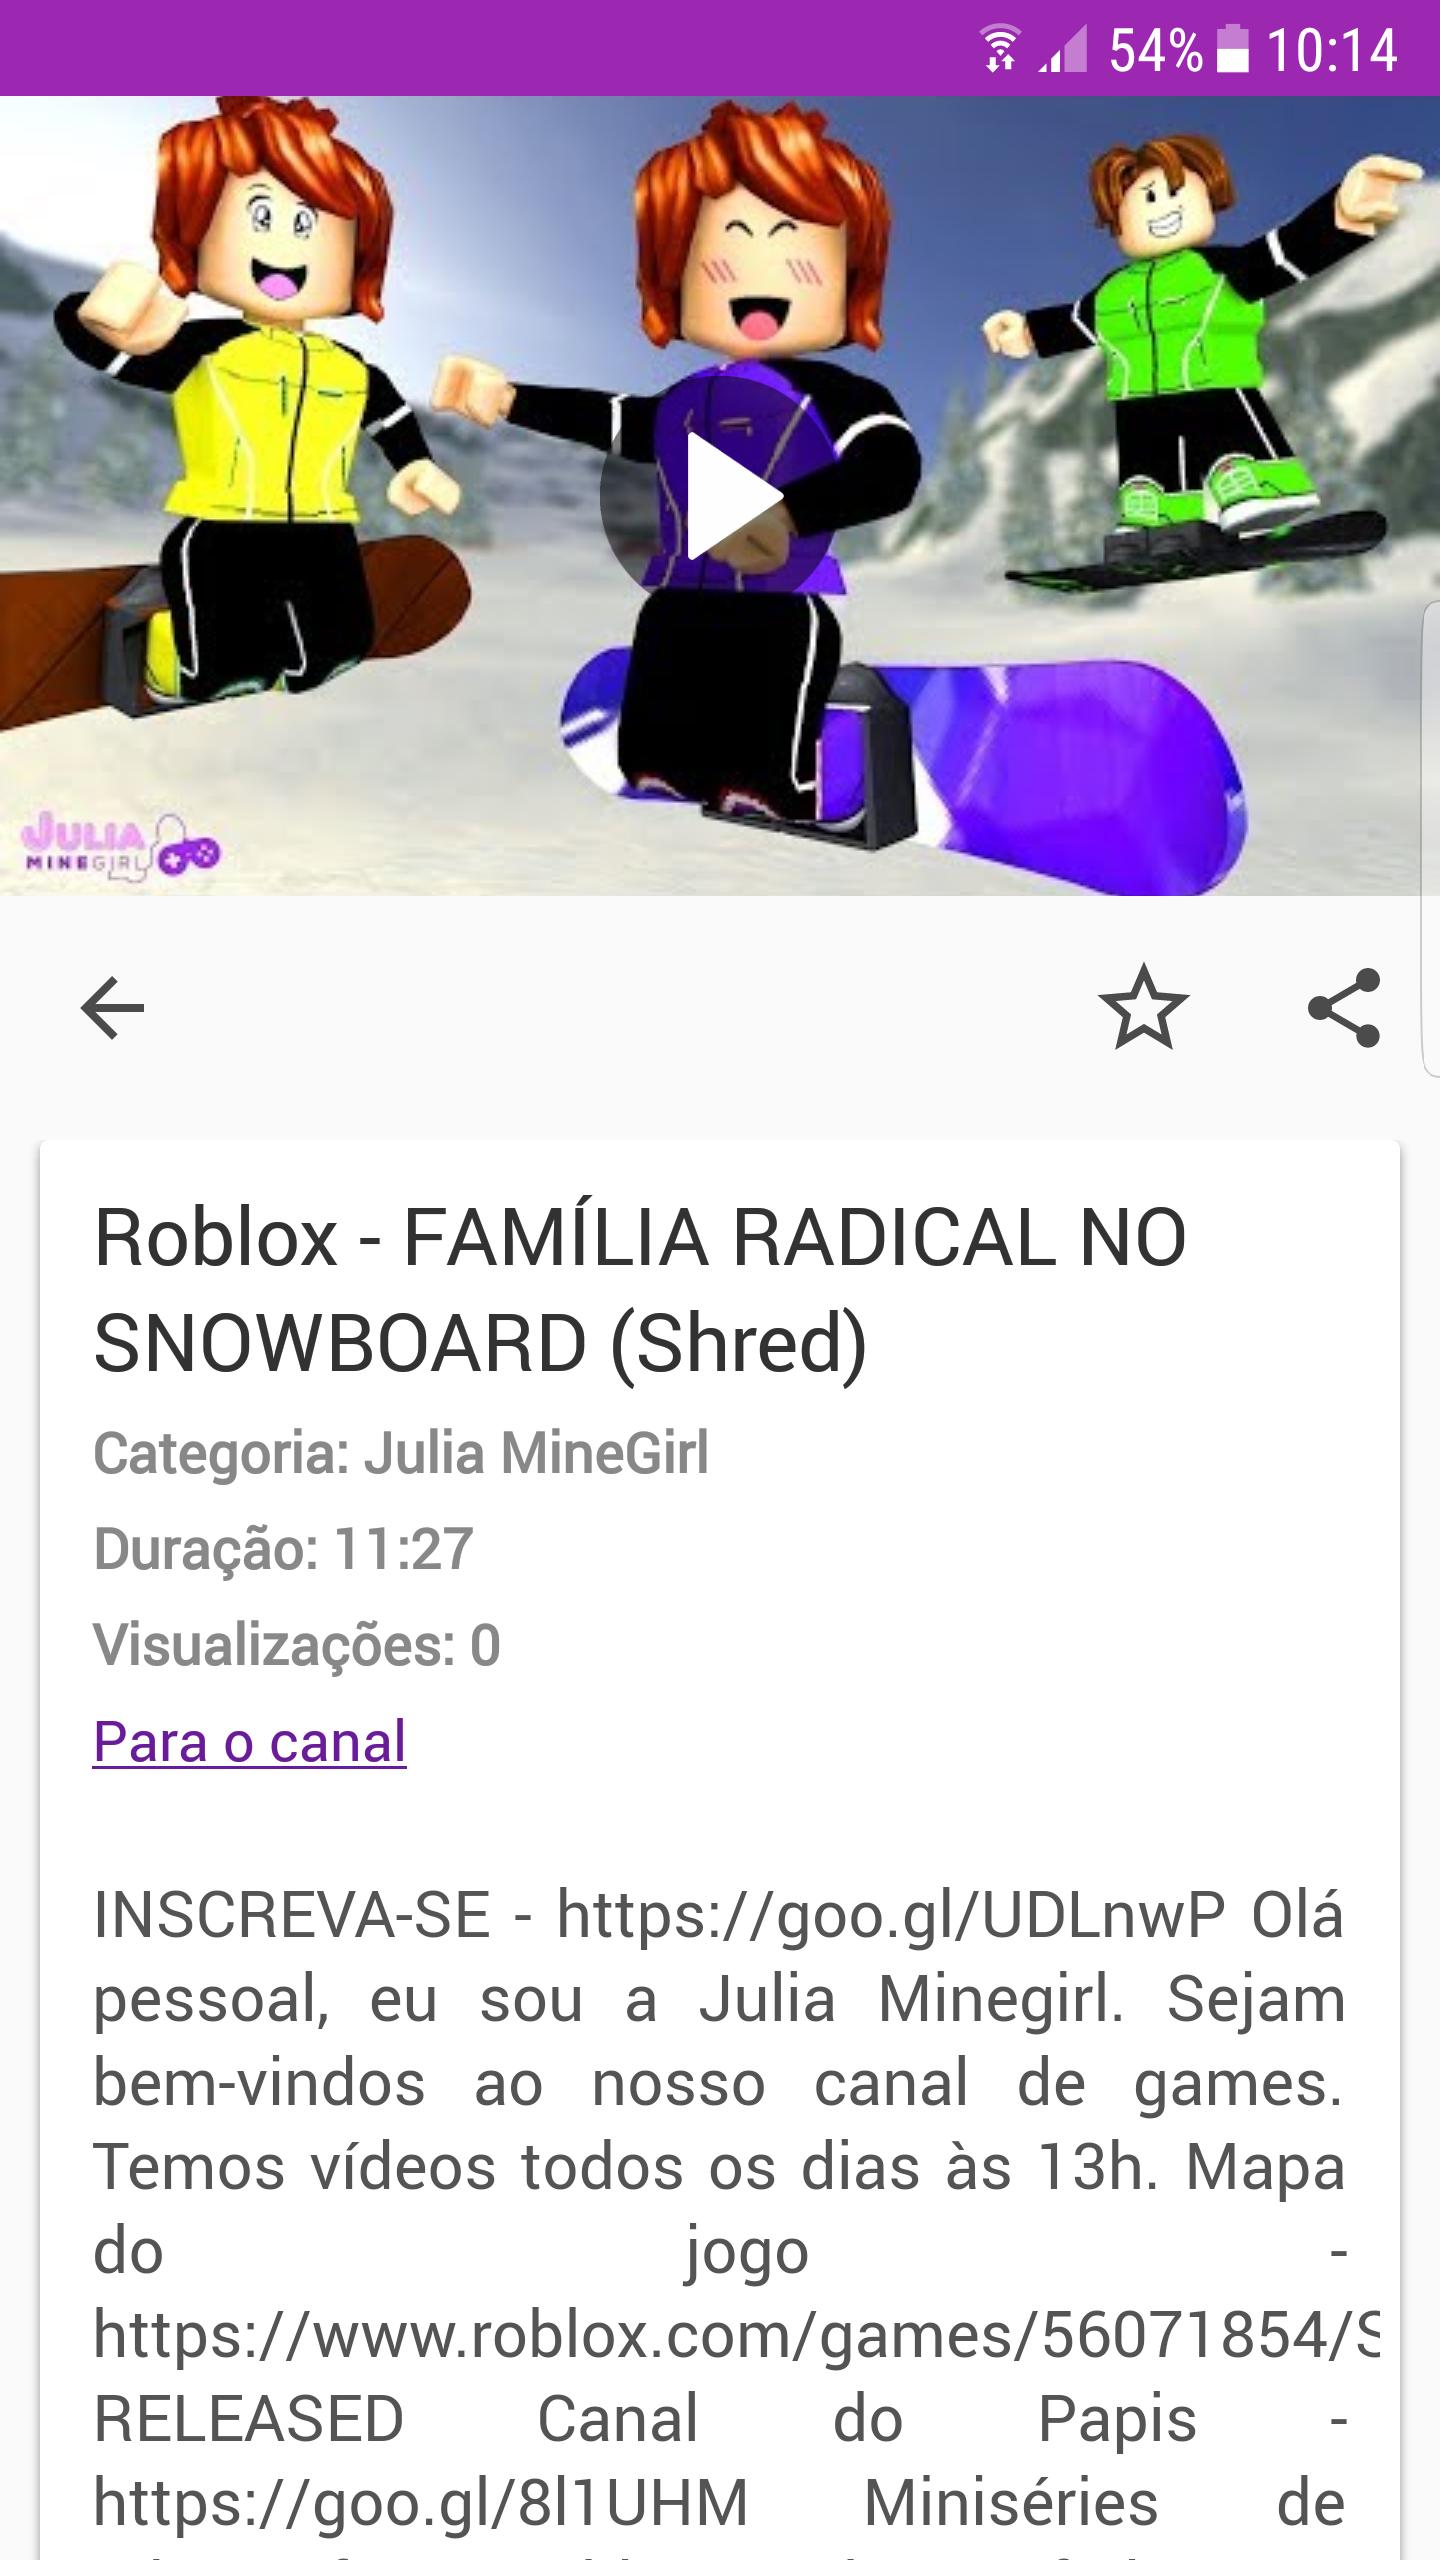 Julia Minegirl Video For Android Apk Download - videos da julia minegirl roblox em familia